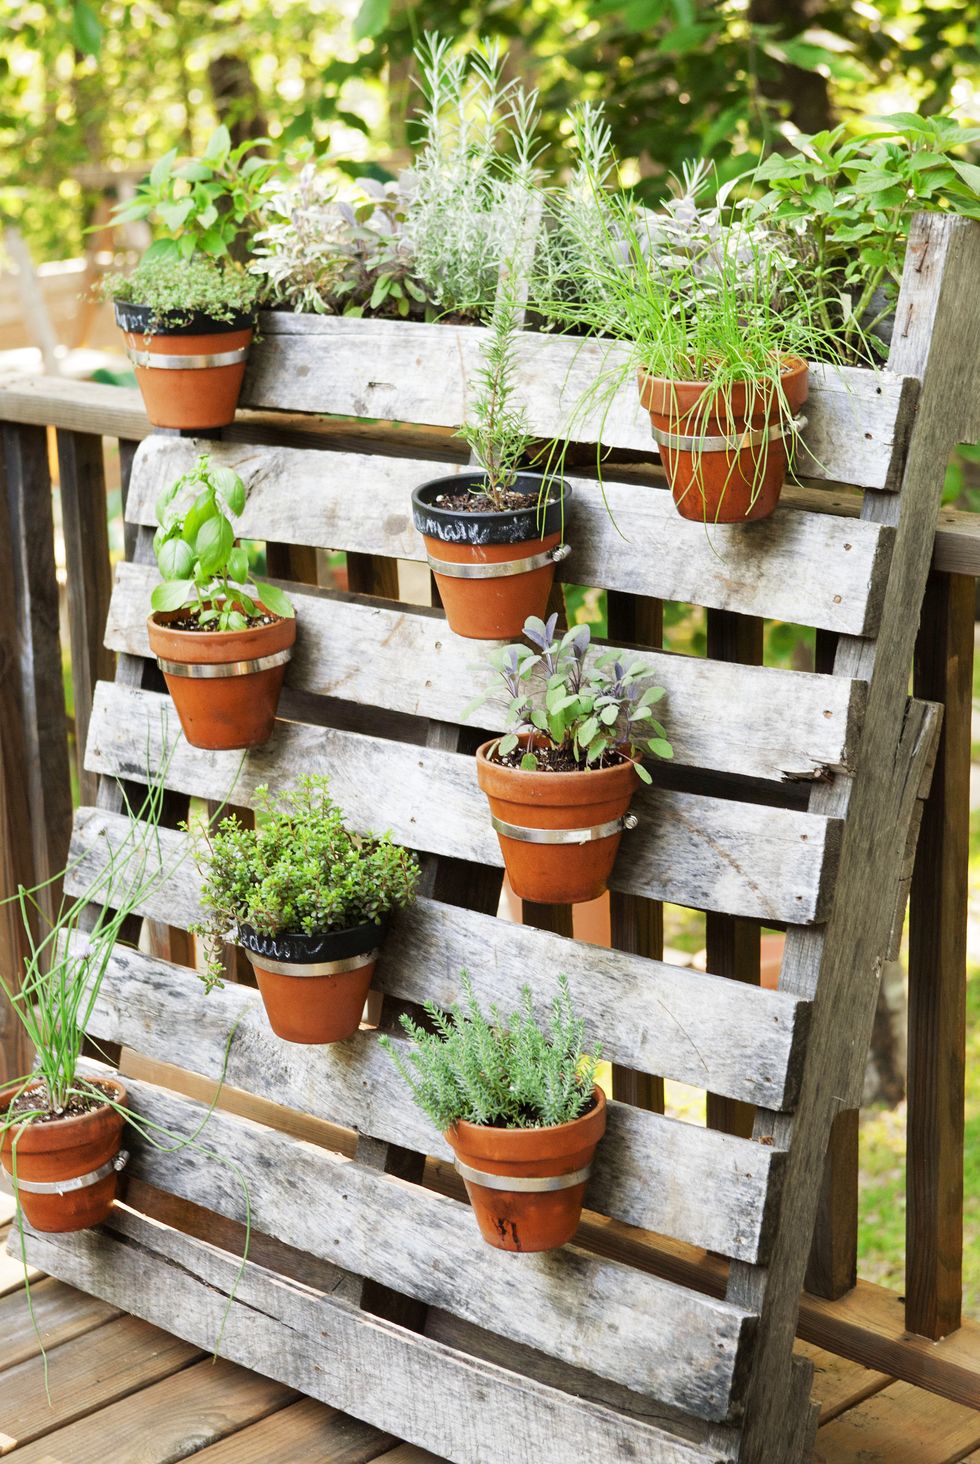 DIY home garden decor idea with a shoe planter and succulents